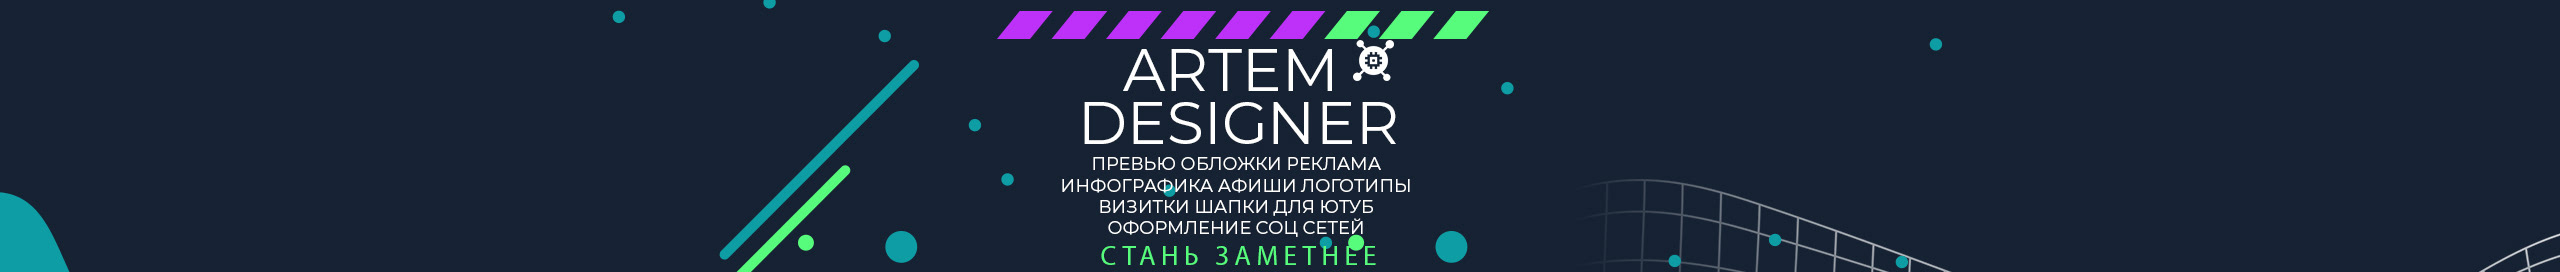 Artem Designer's profile banner